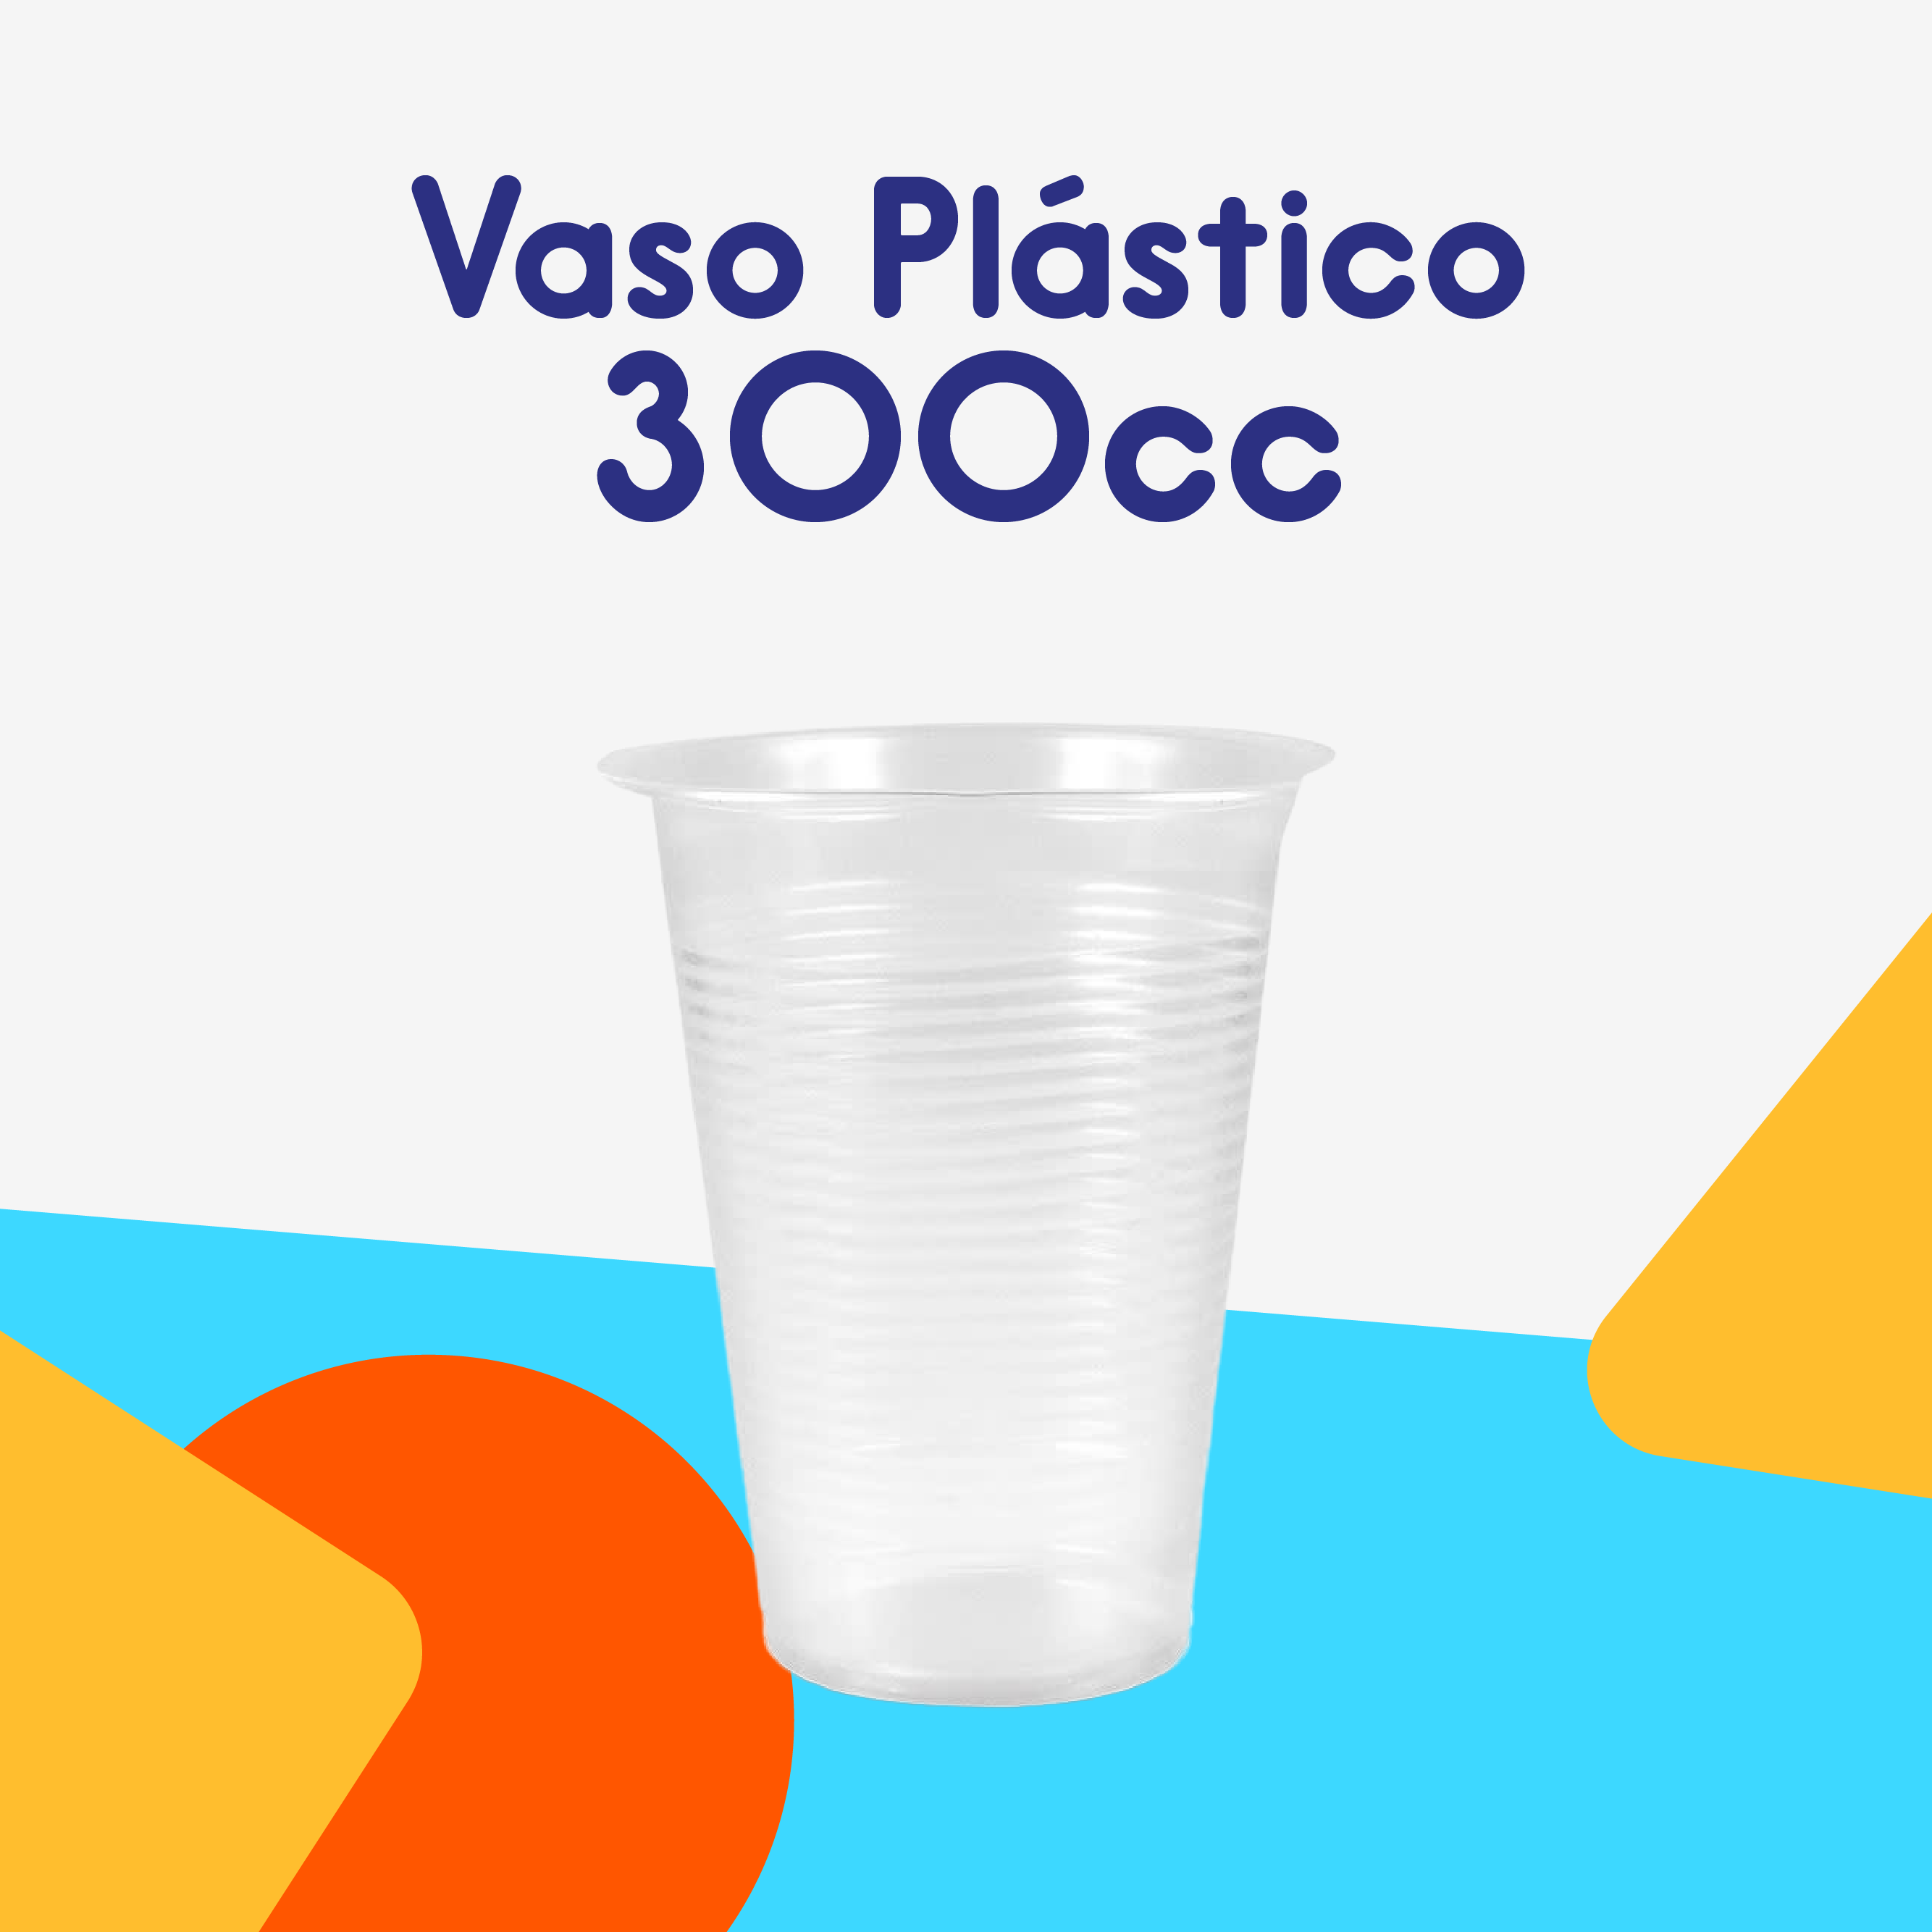 Vaso plástico 300cc (50 Unidades)